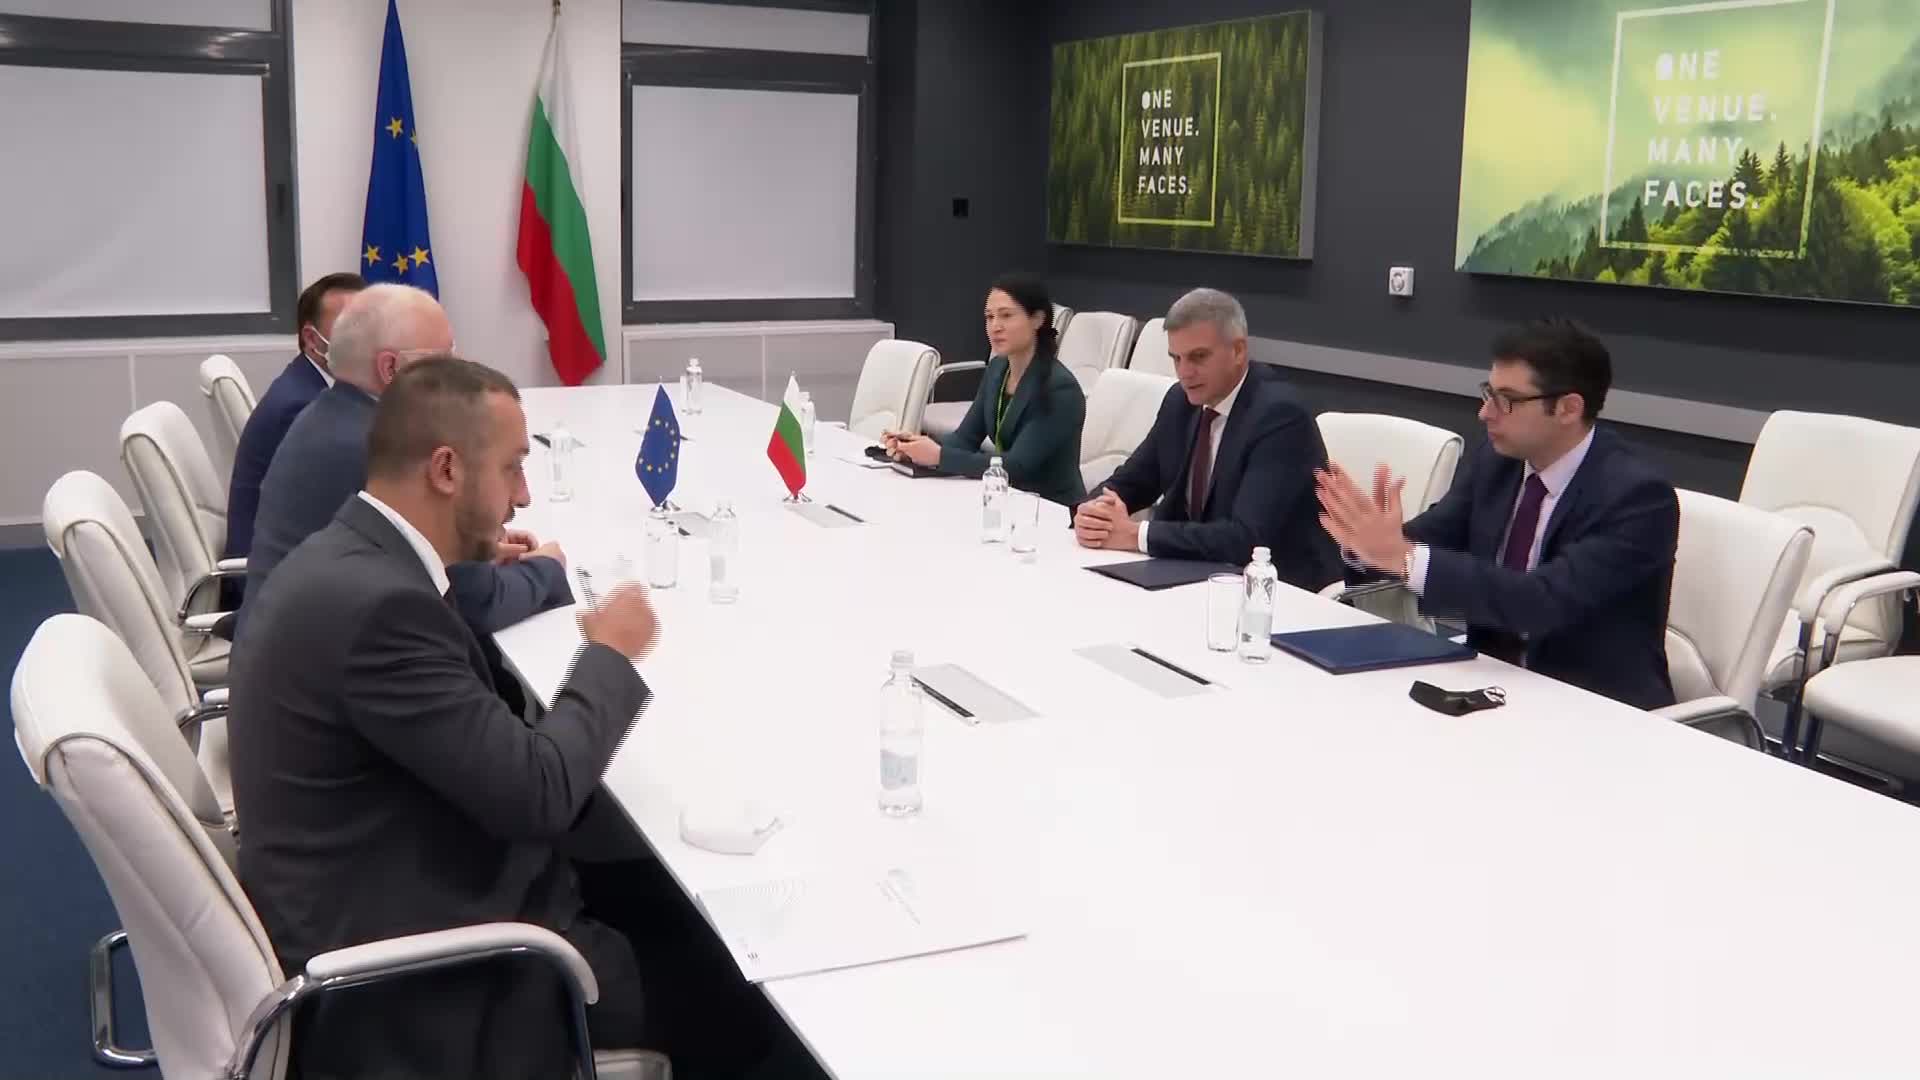 Тимерманс: Ще отчетем ситуацията в България при прегледа на Плана за възстановяване